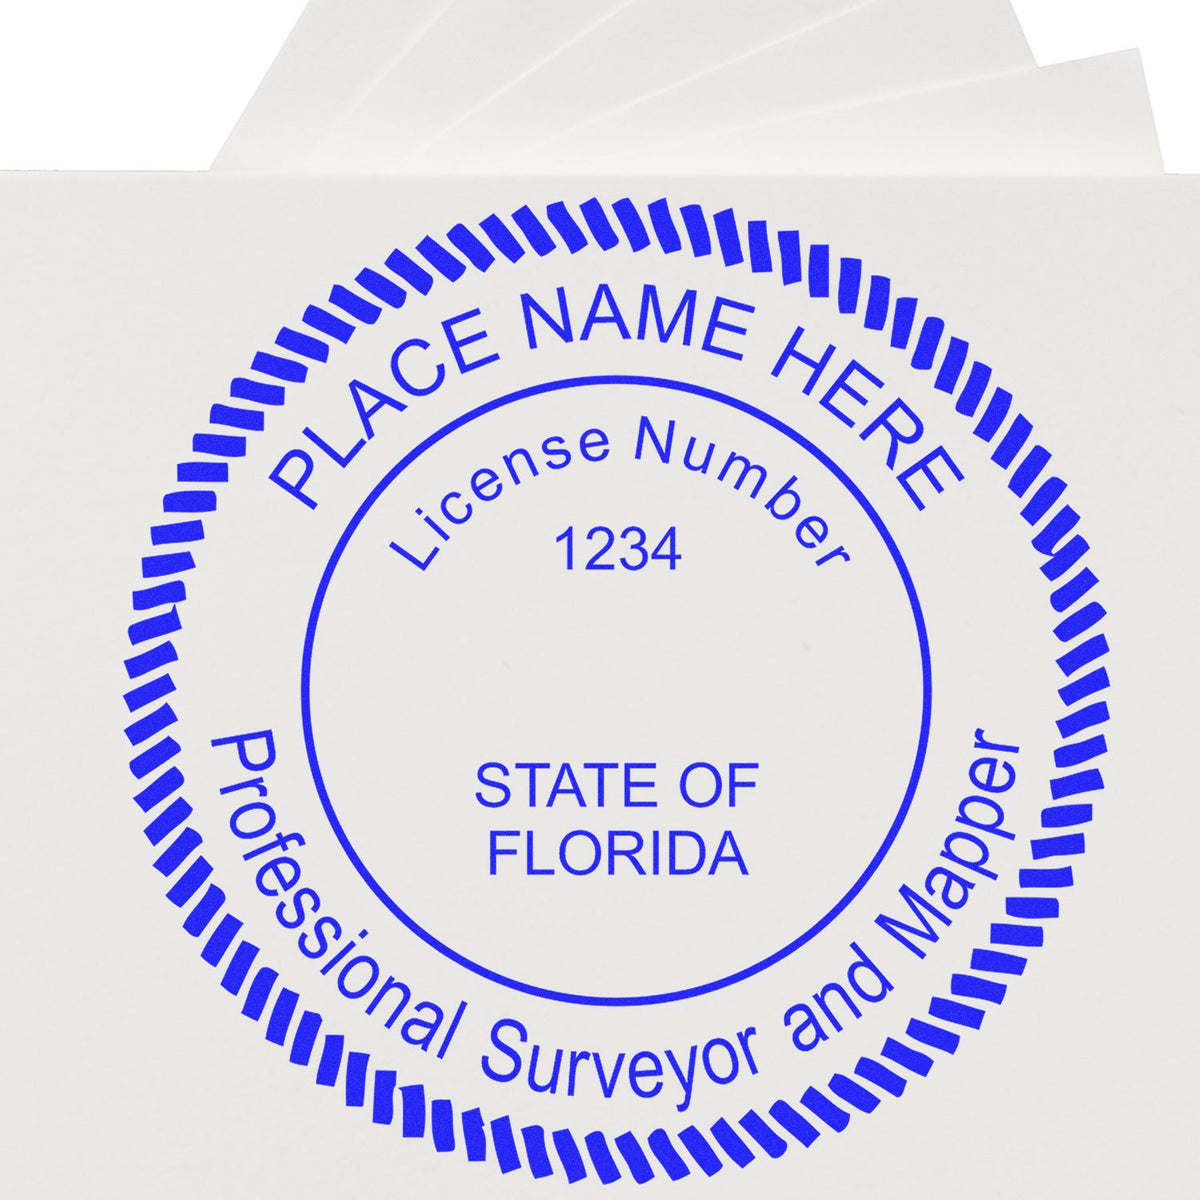 Florida Land Surveyor Seal Stamp In Use Photo